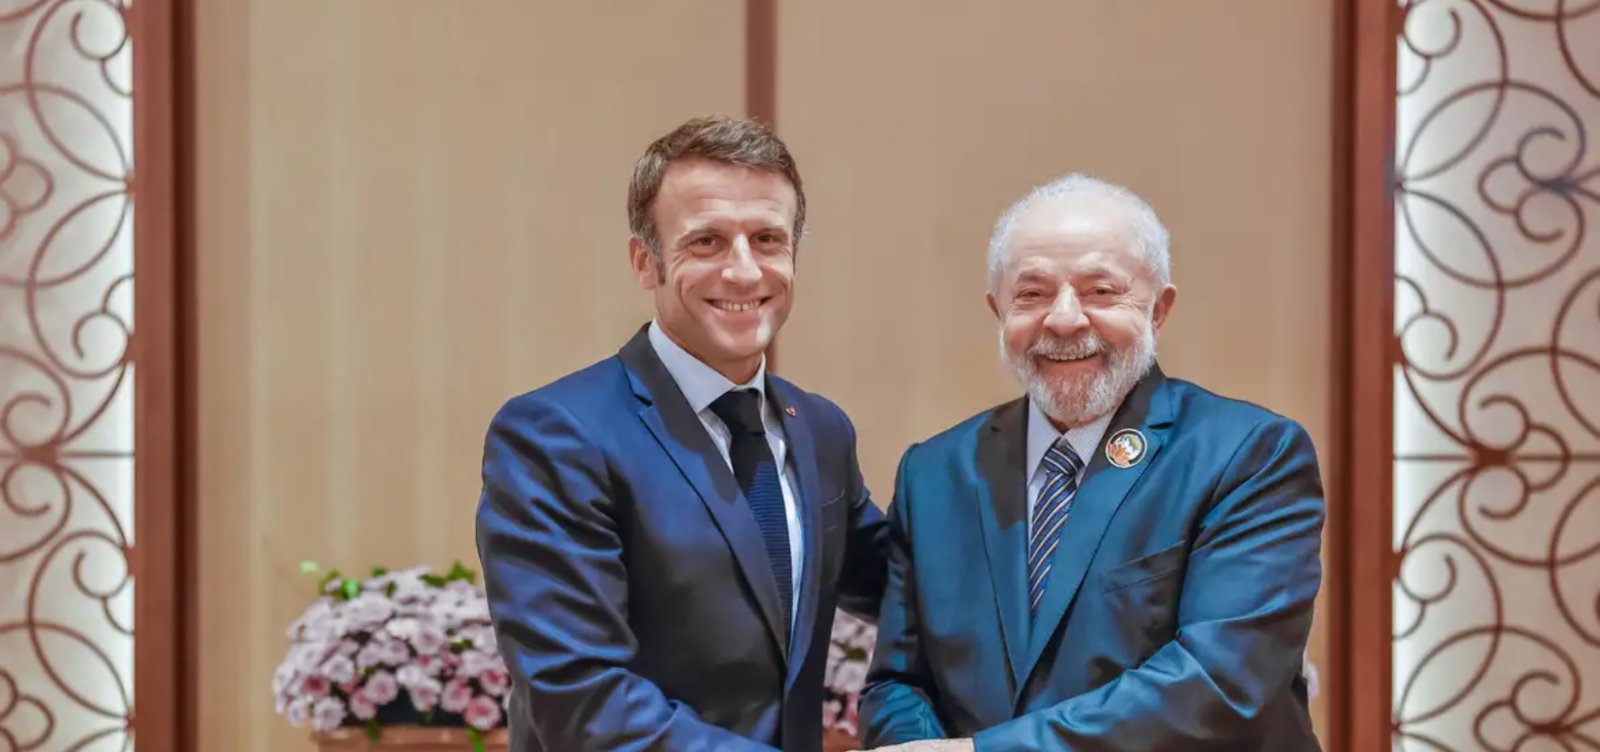 Macron desembarca em Belém nesta terça-feira onde será recebido por Lula